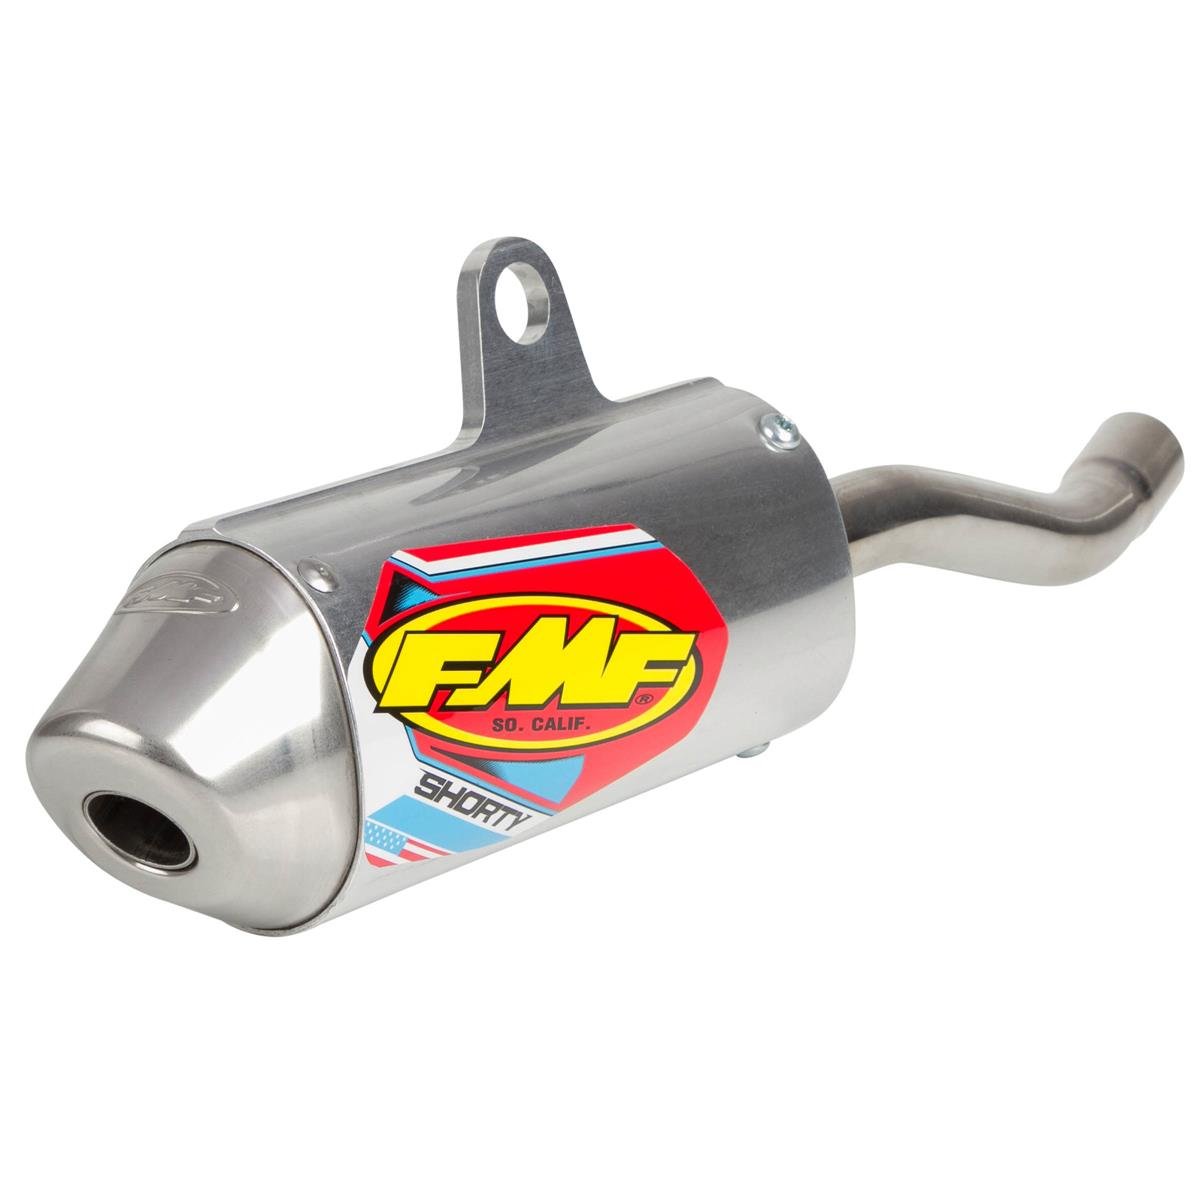 FMF Endschalldämpfer PowerCore 2 Shorty KTM SX 125 98-03, Edelstahl/Aluminium/Edelstahl